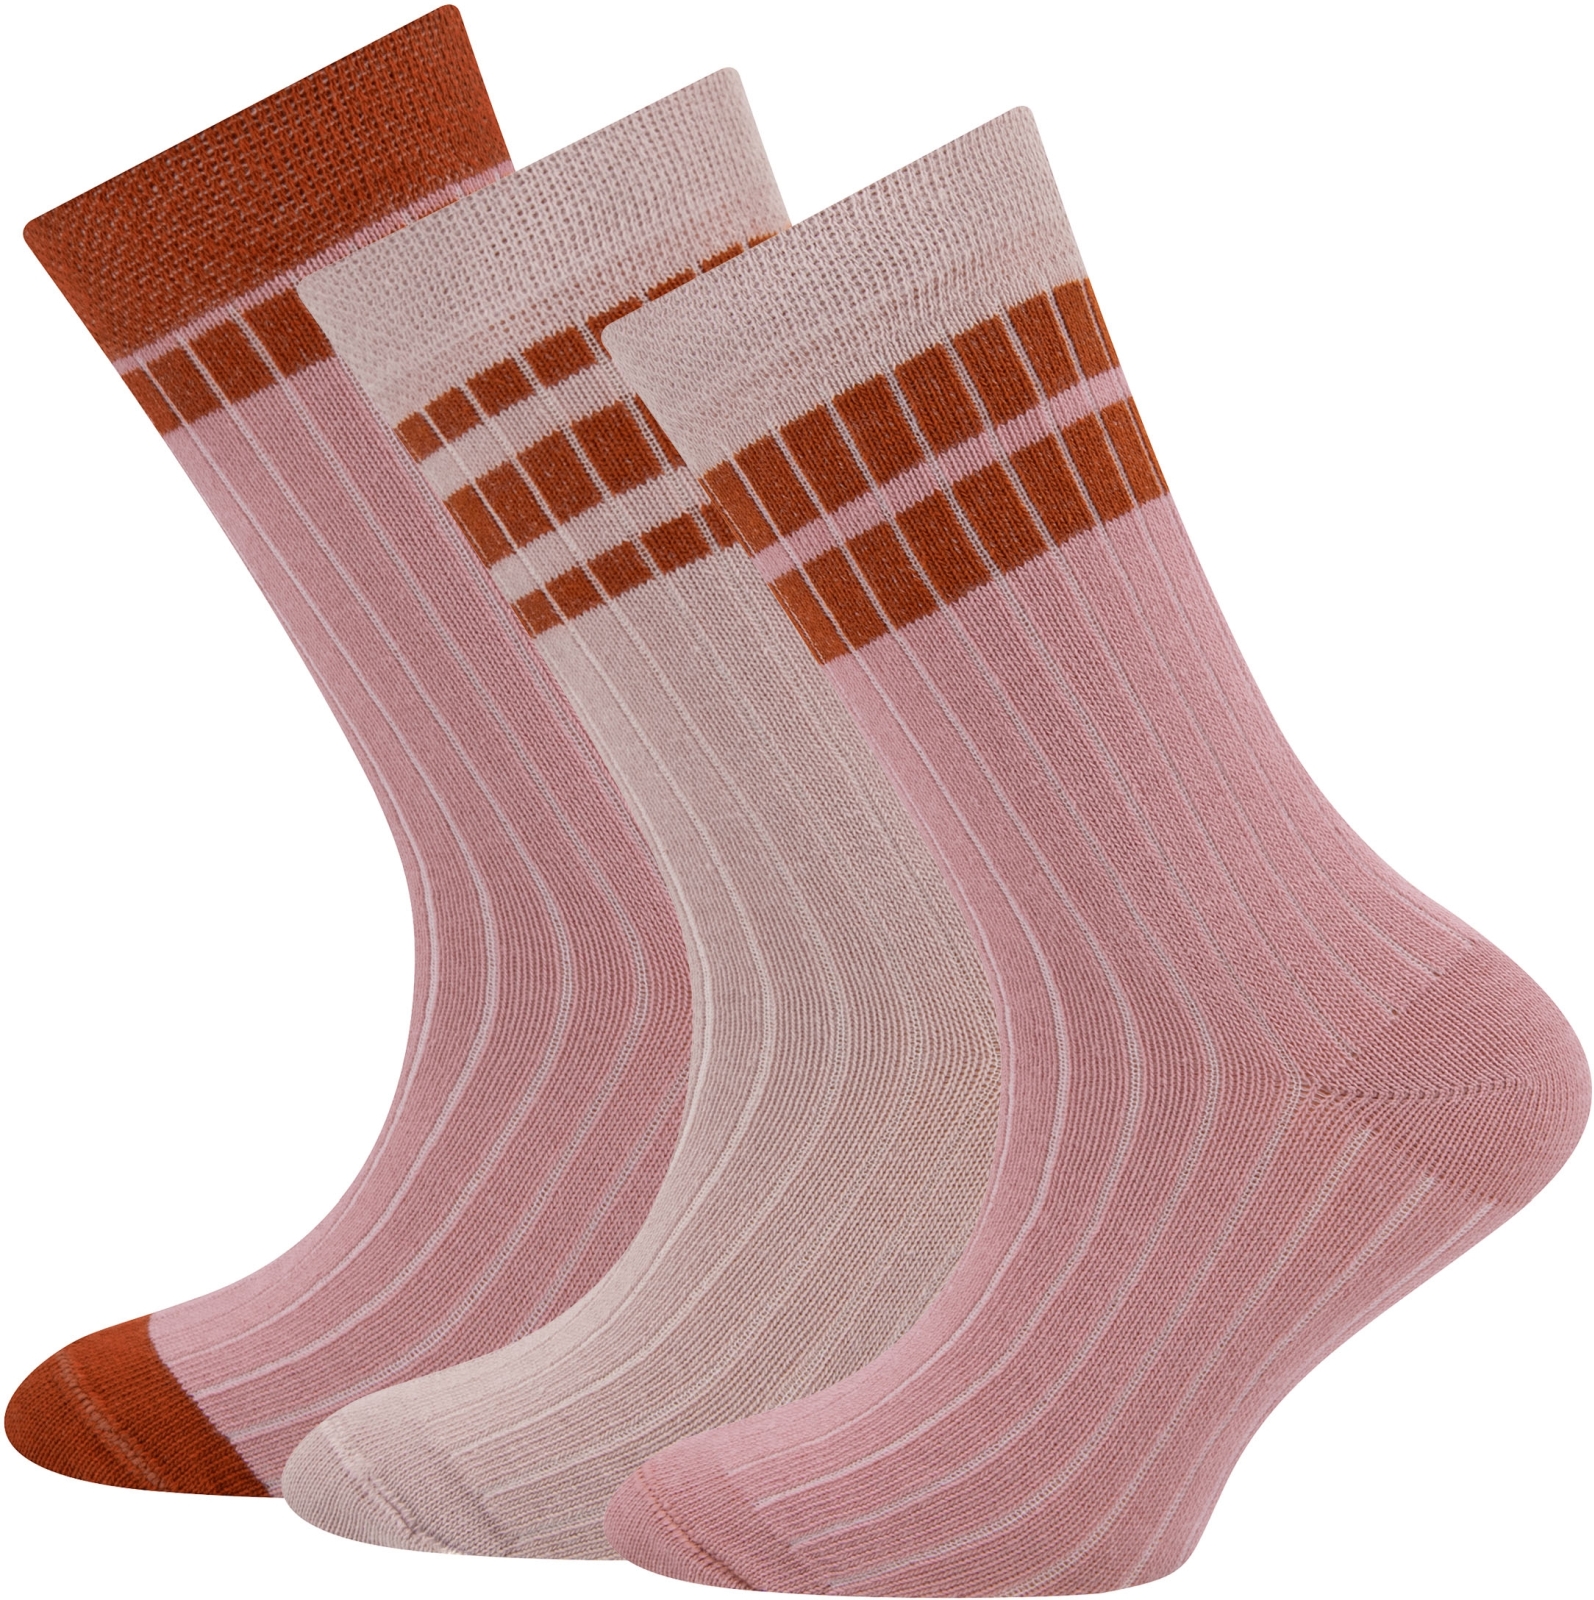 Ewers Socken 3er Pack Rippe/Ringel - 0001 31-34